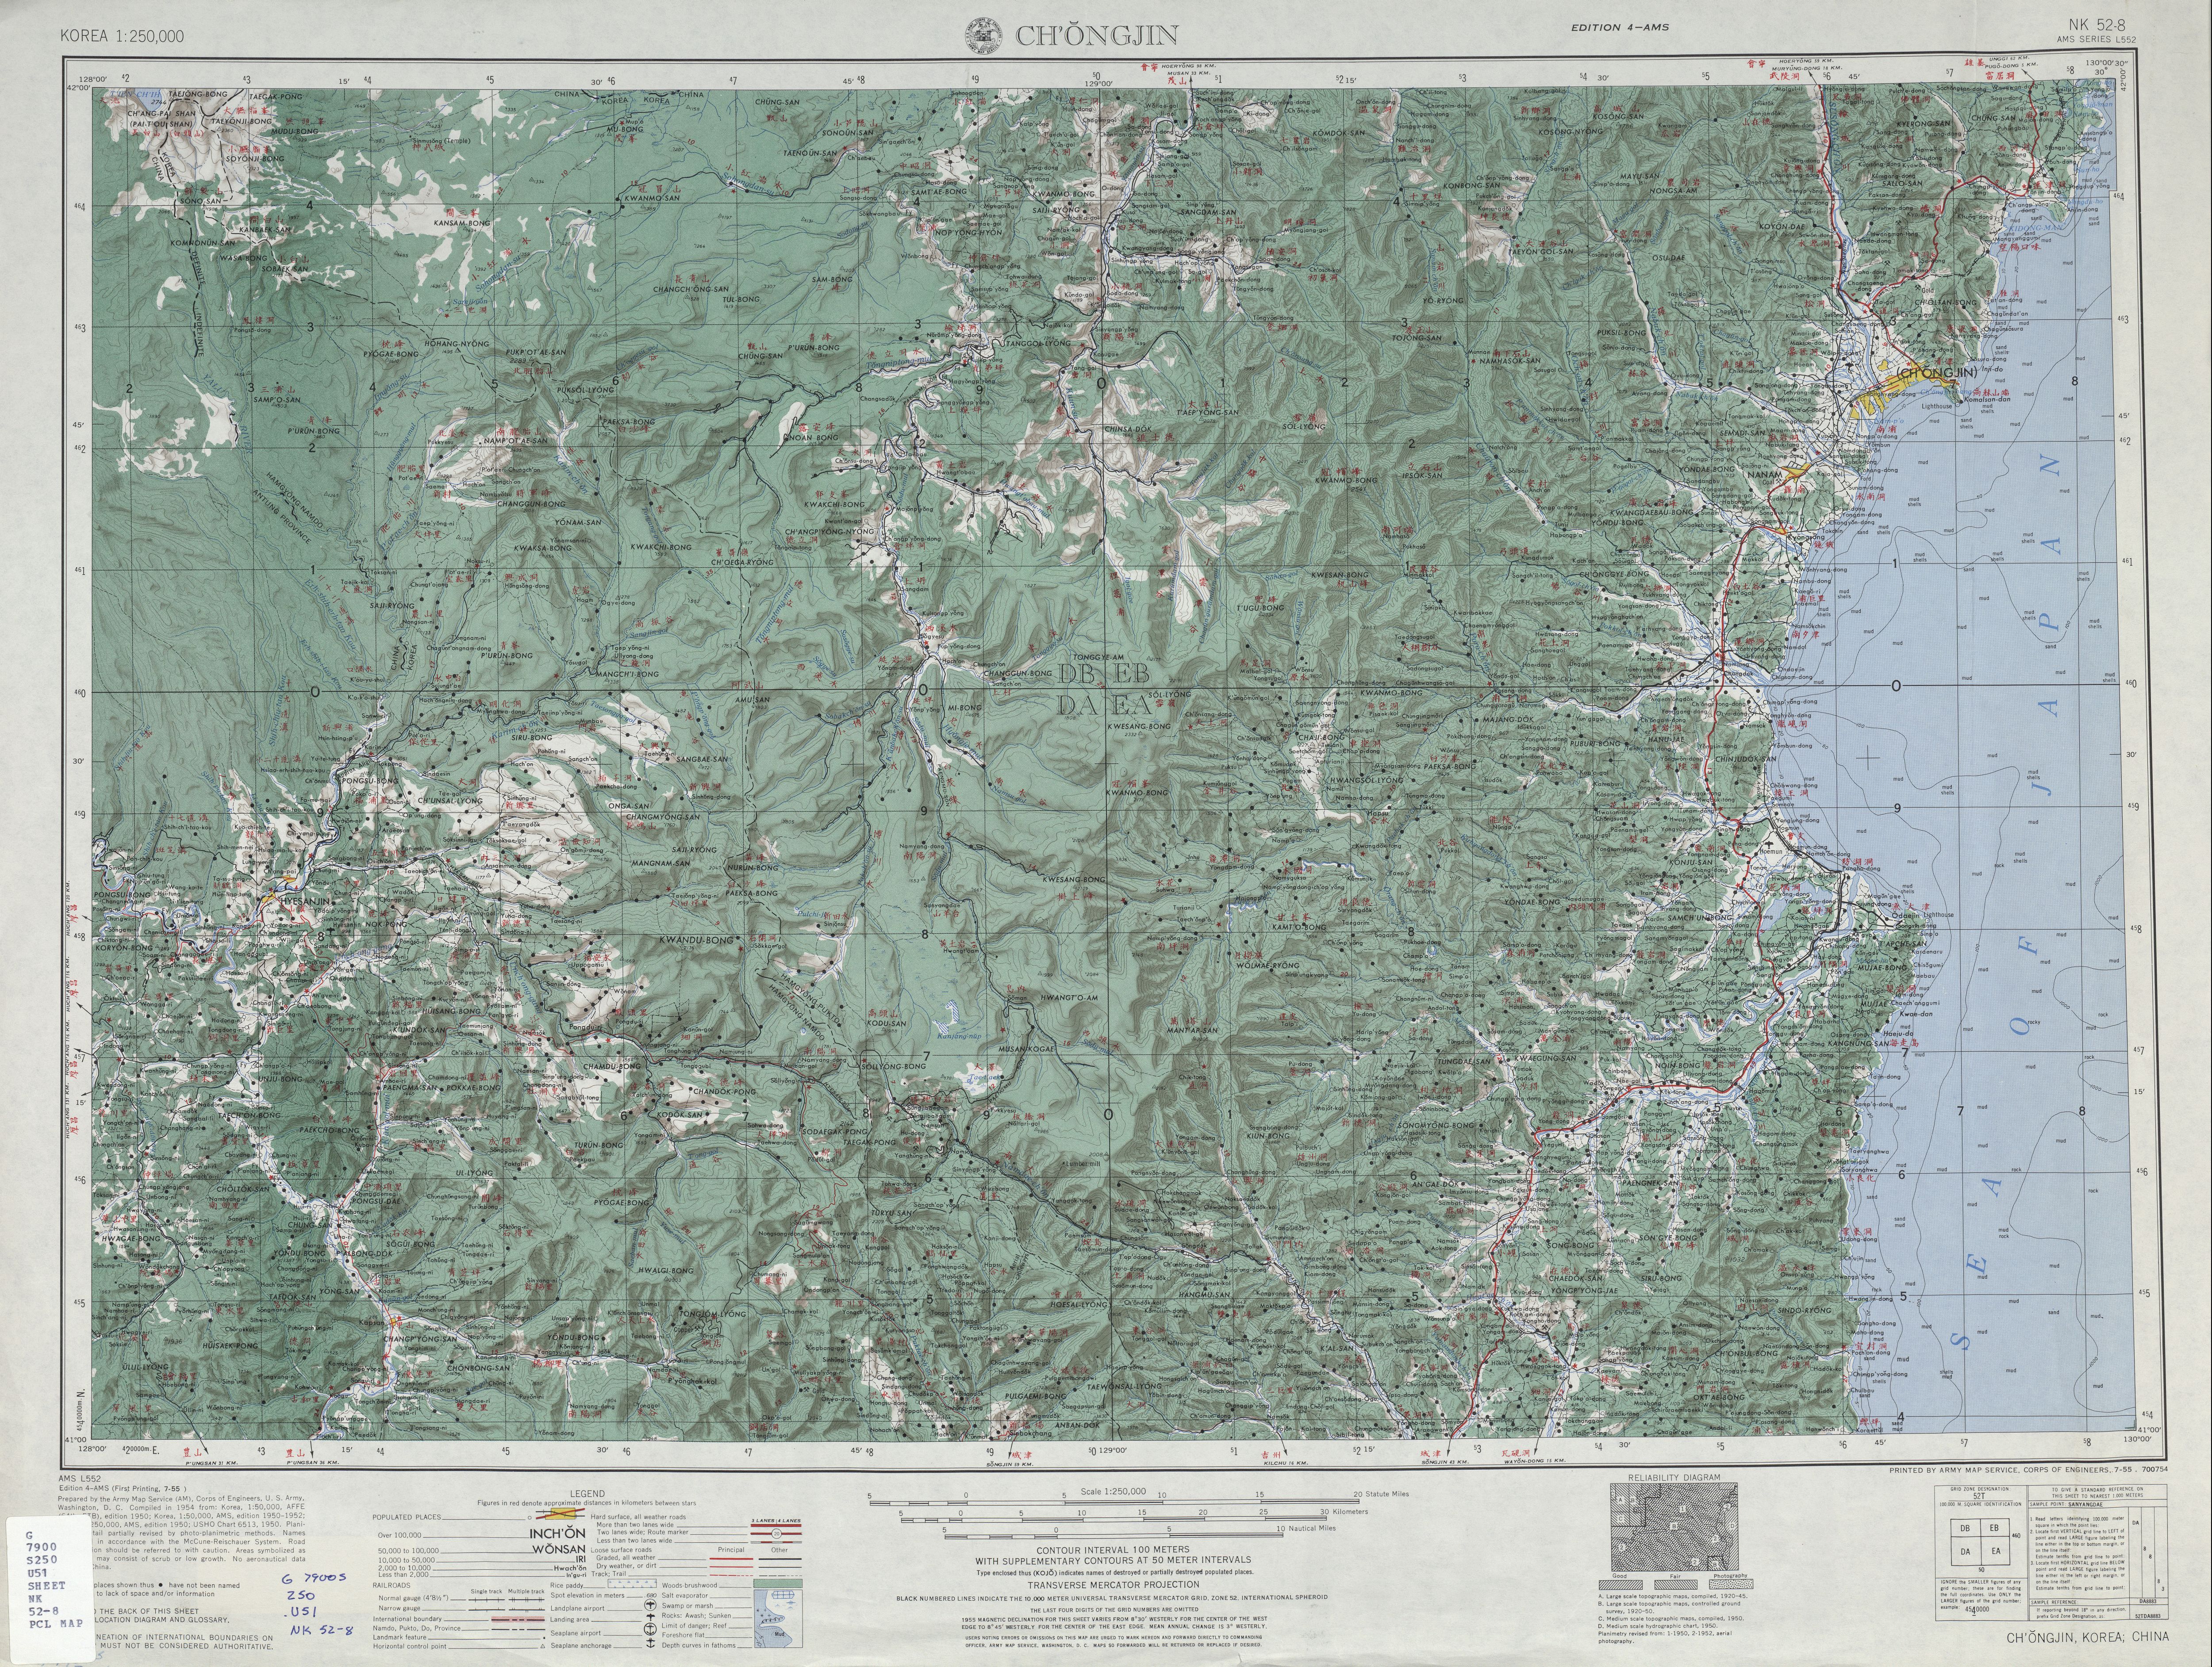 Карта 1954. Лимнология карты. Гора Пэкту на карте. Ryanggang Province.